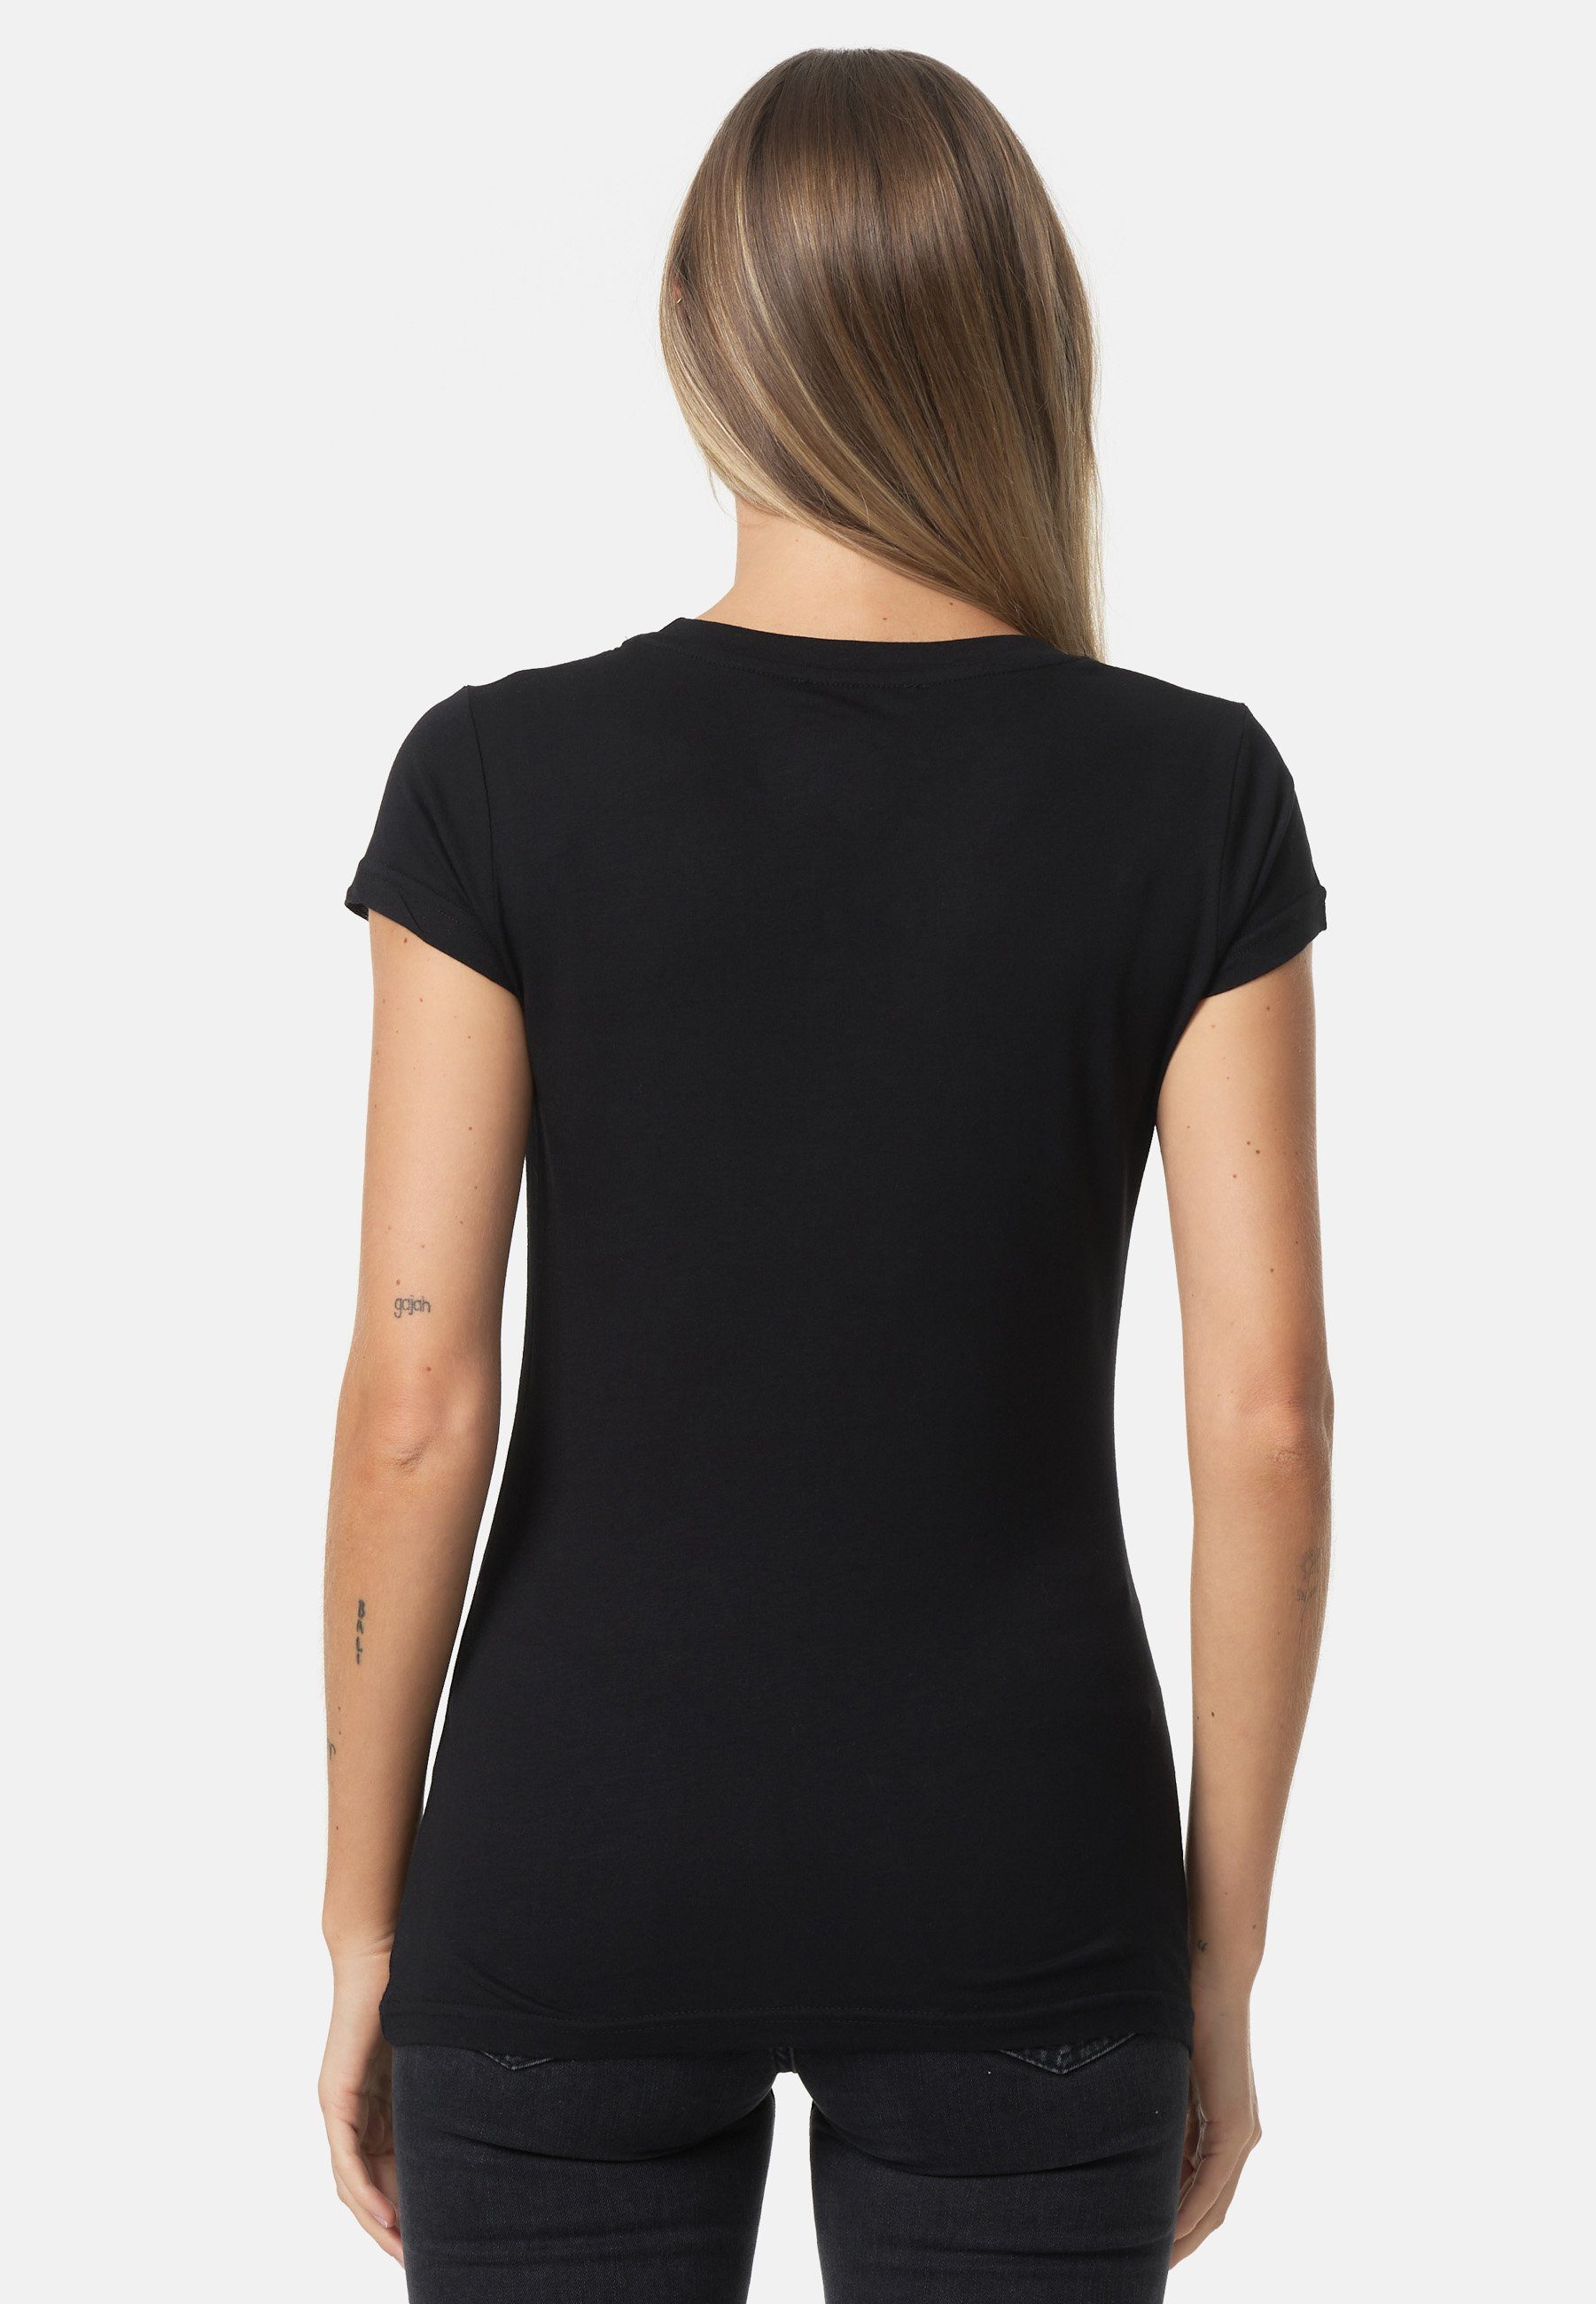 Decay T-Shirt mit schwarz Frontprint glänzendem